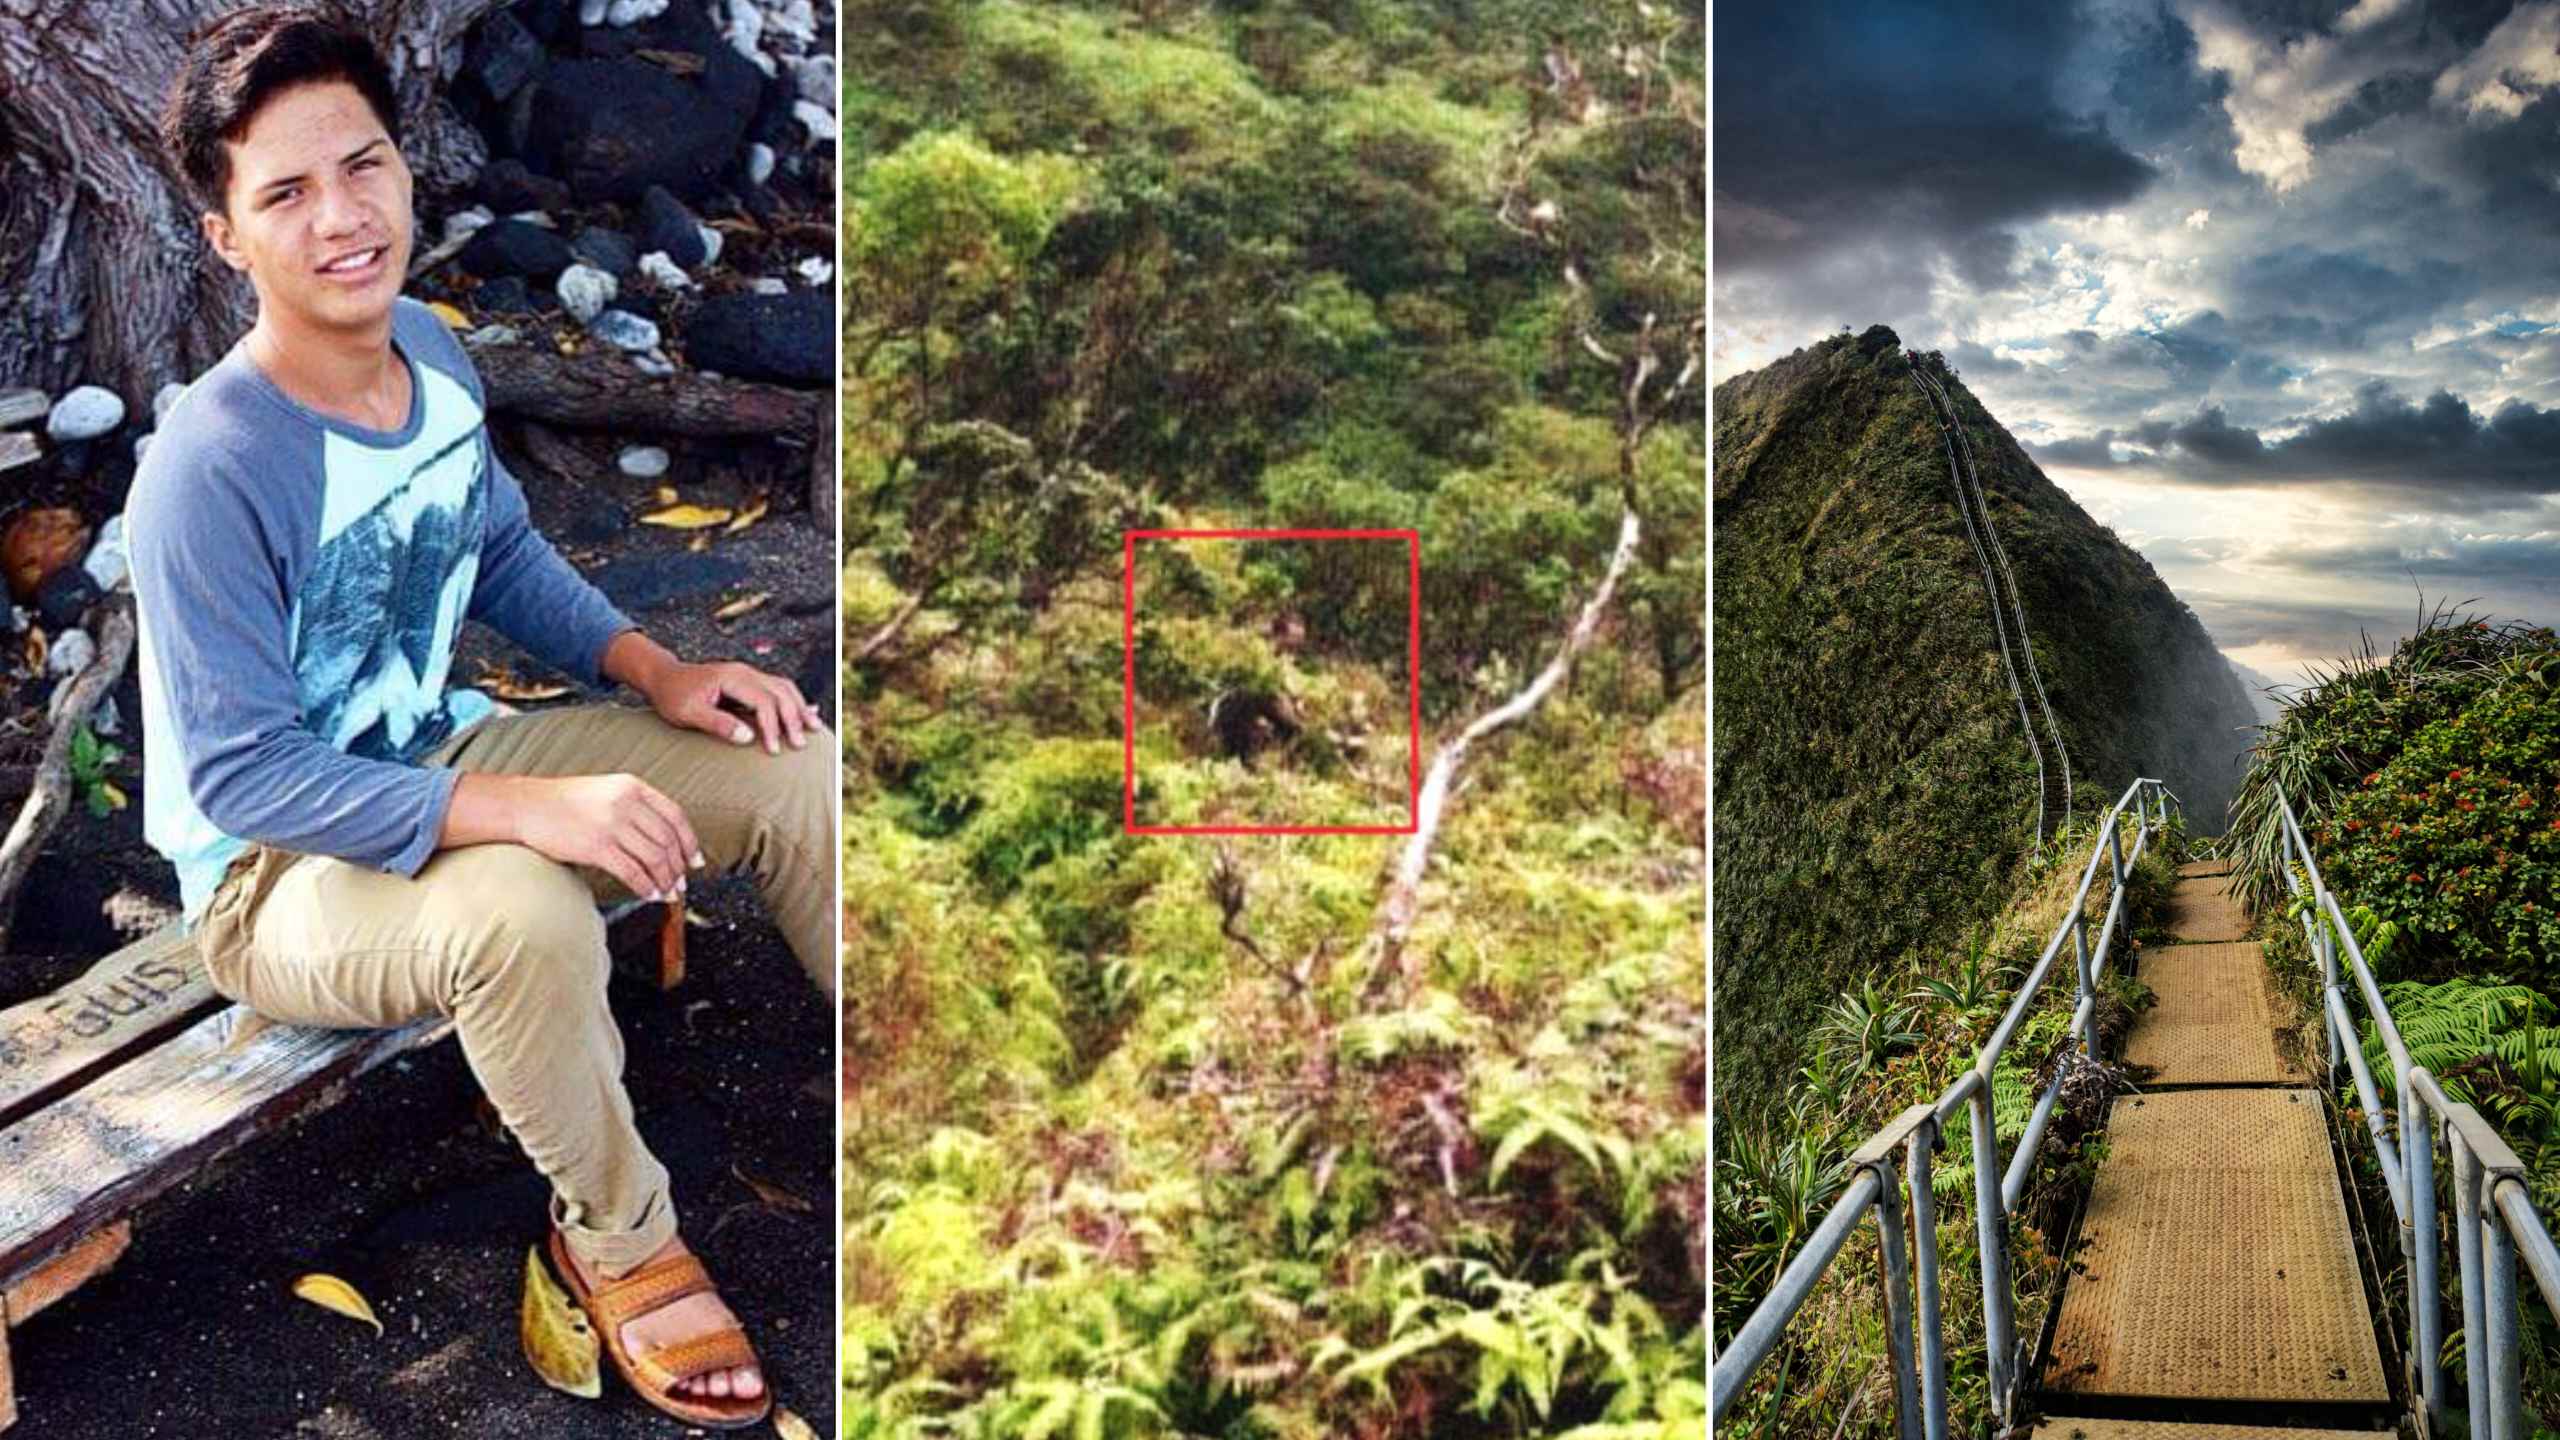 डेलेन पुआ हवाई के सबसे खतरनाक रास्तों में से एक, हाइकु सीढ़ियों से गायब हो गया। अनप्लैश/उचित उपयोग